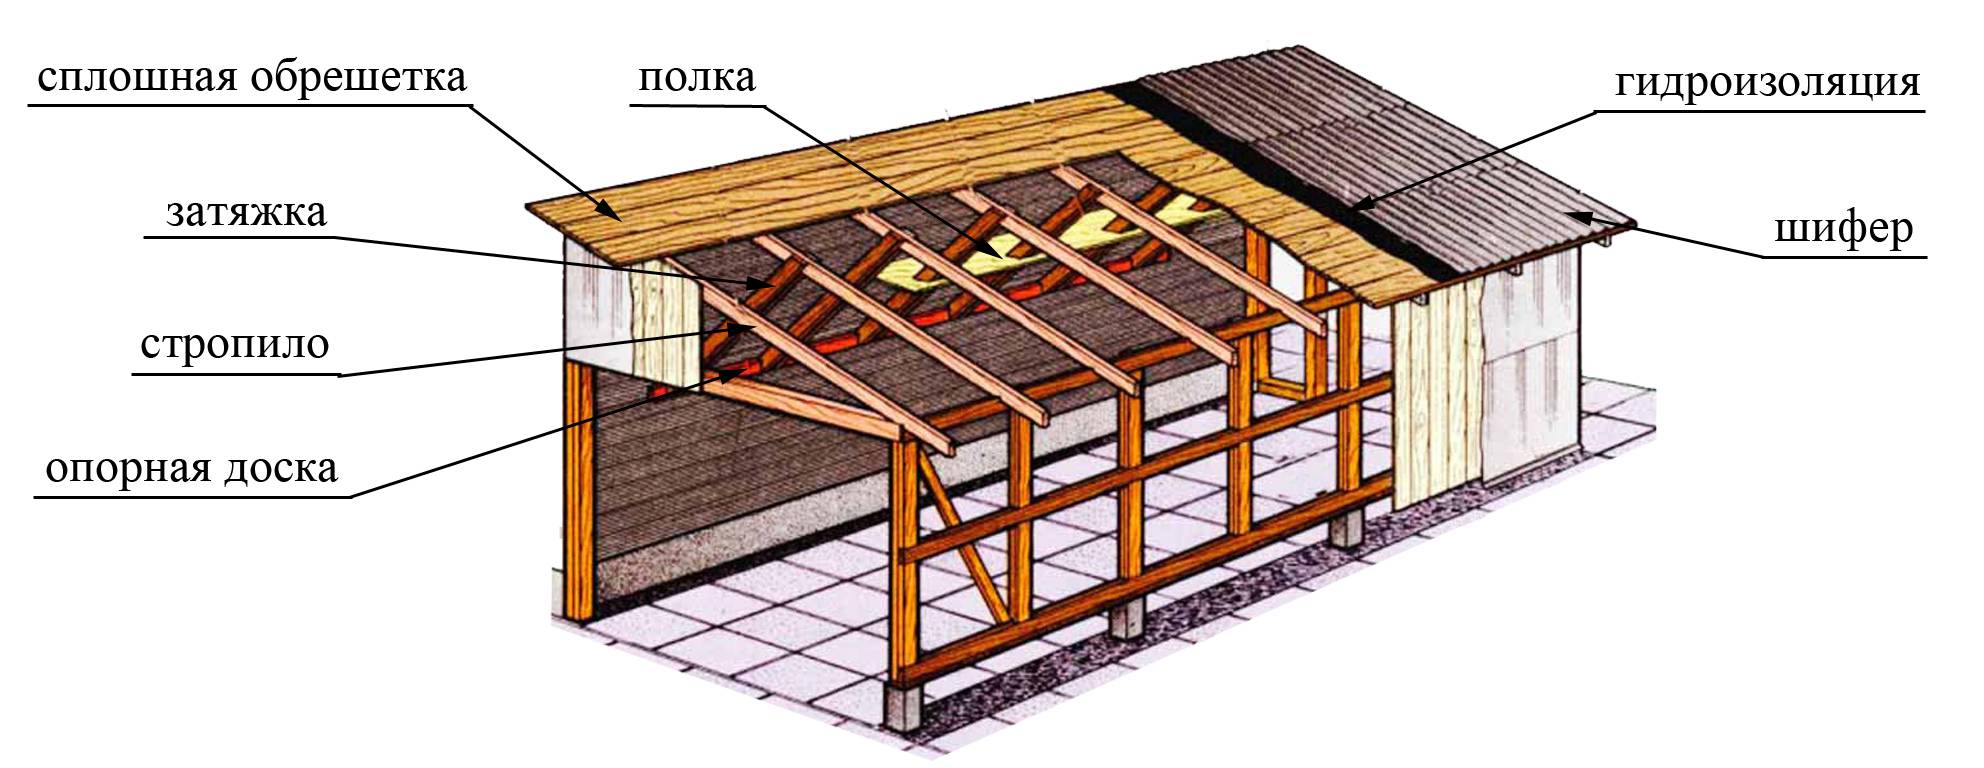 Односкатная крыша с мансардой: варианты устройства чердачного этажа, строительство своими руками, фото конструкций